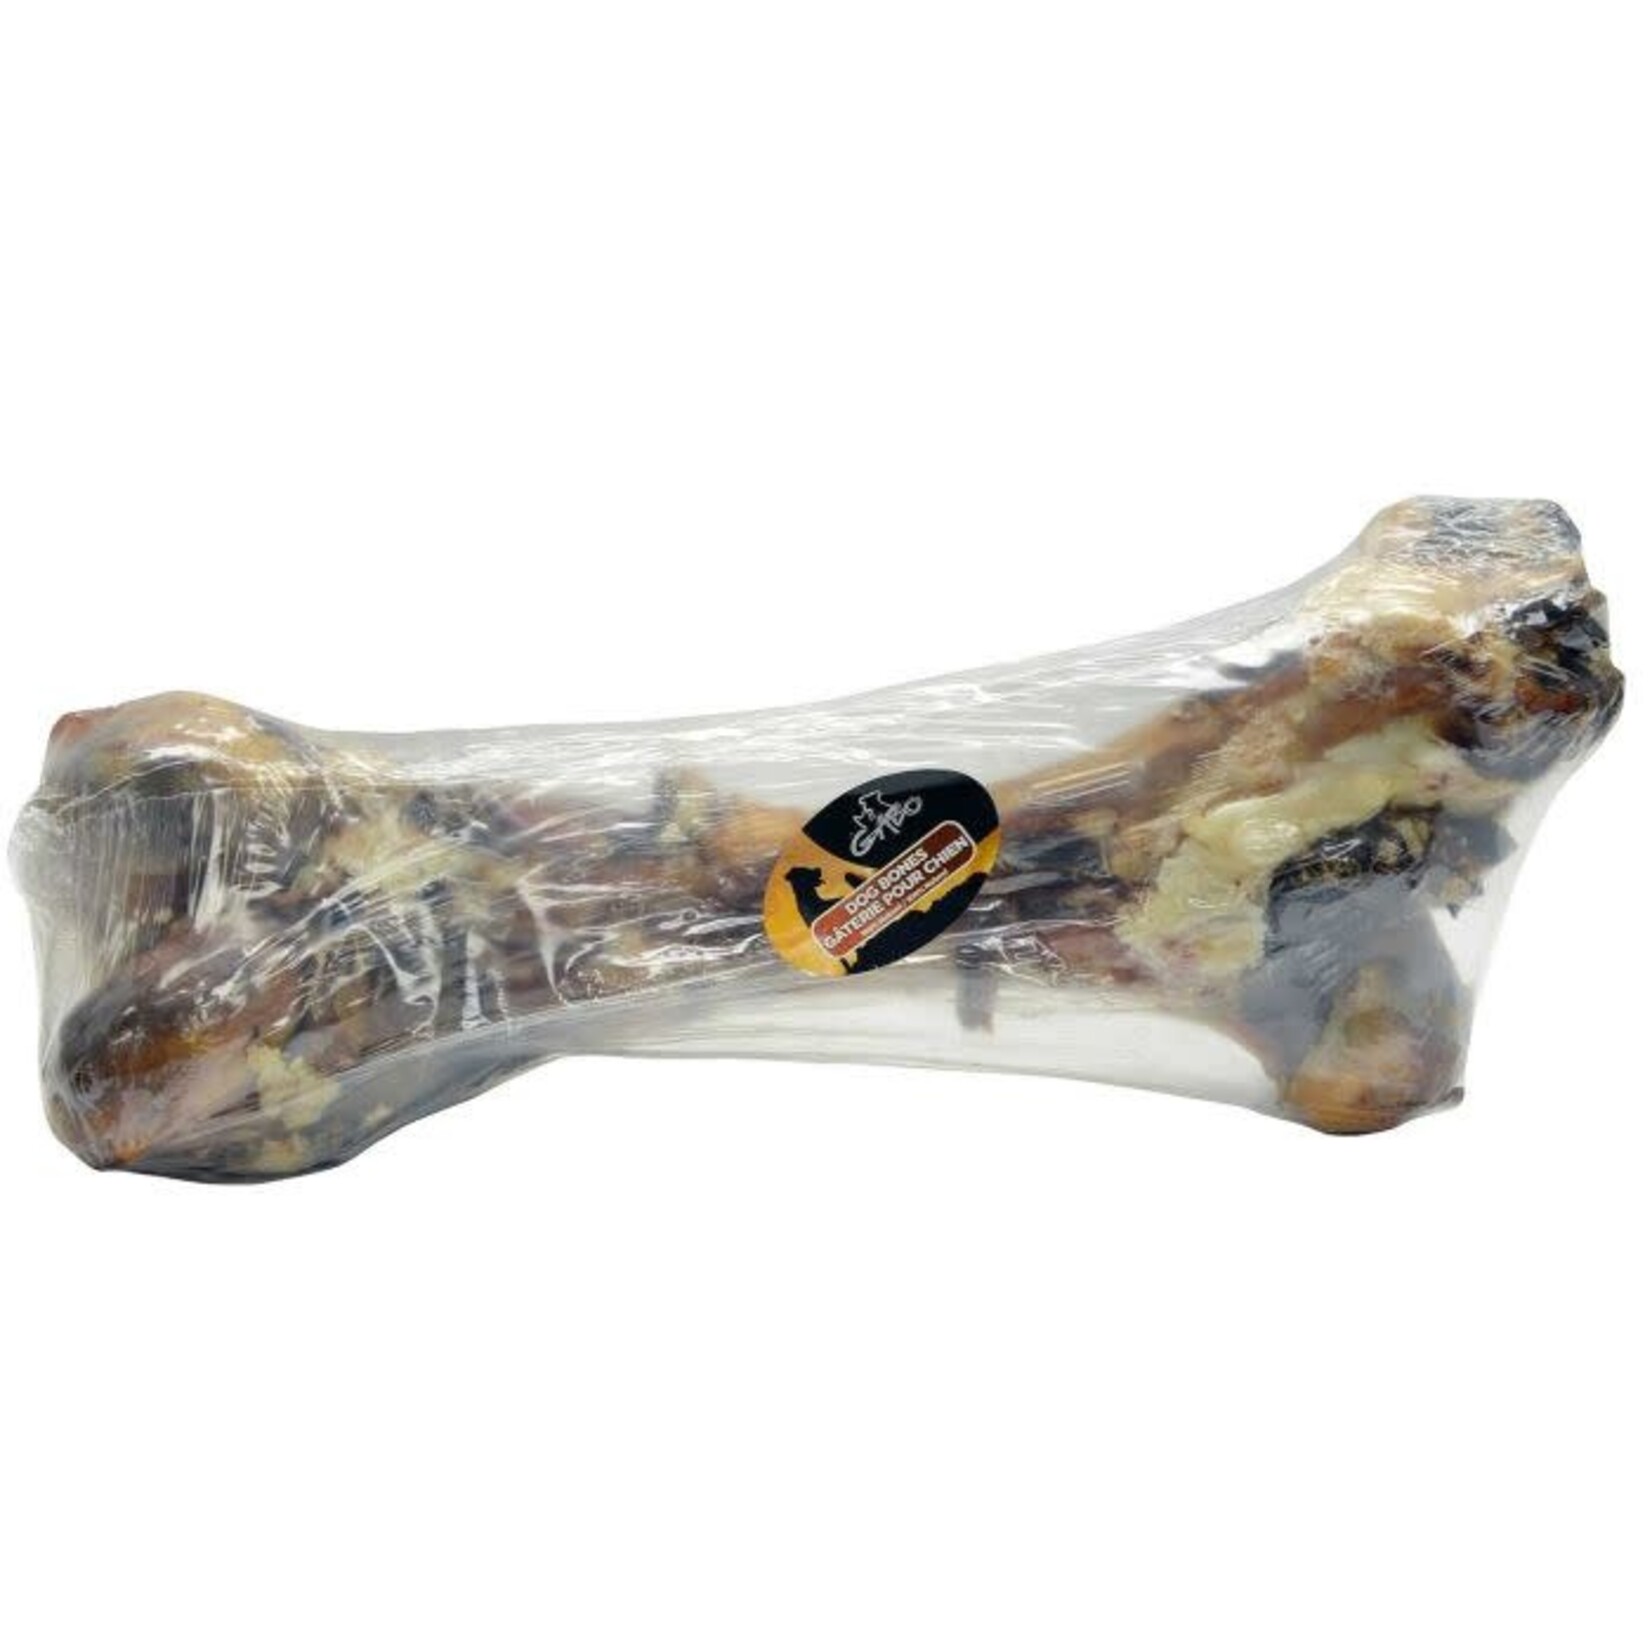 GABO Pork Femur Bone 6"